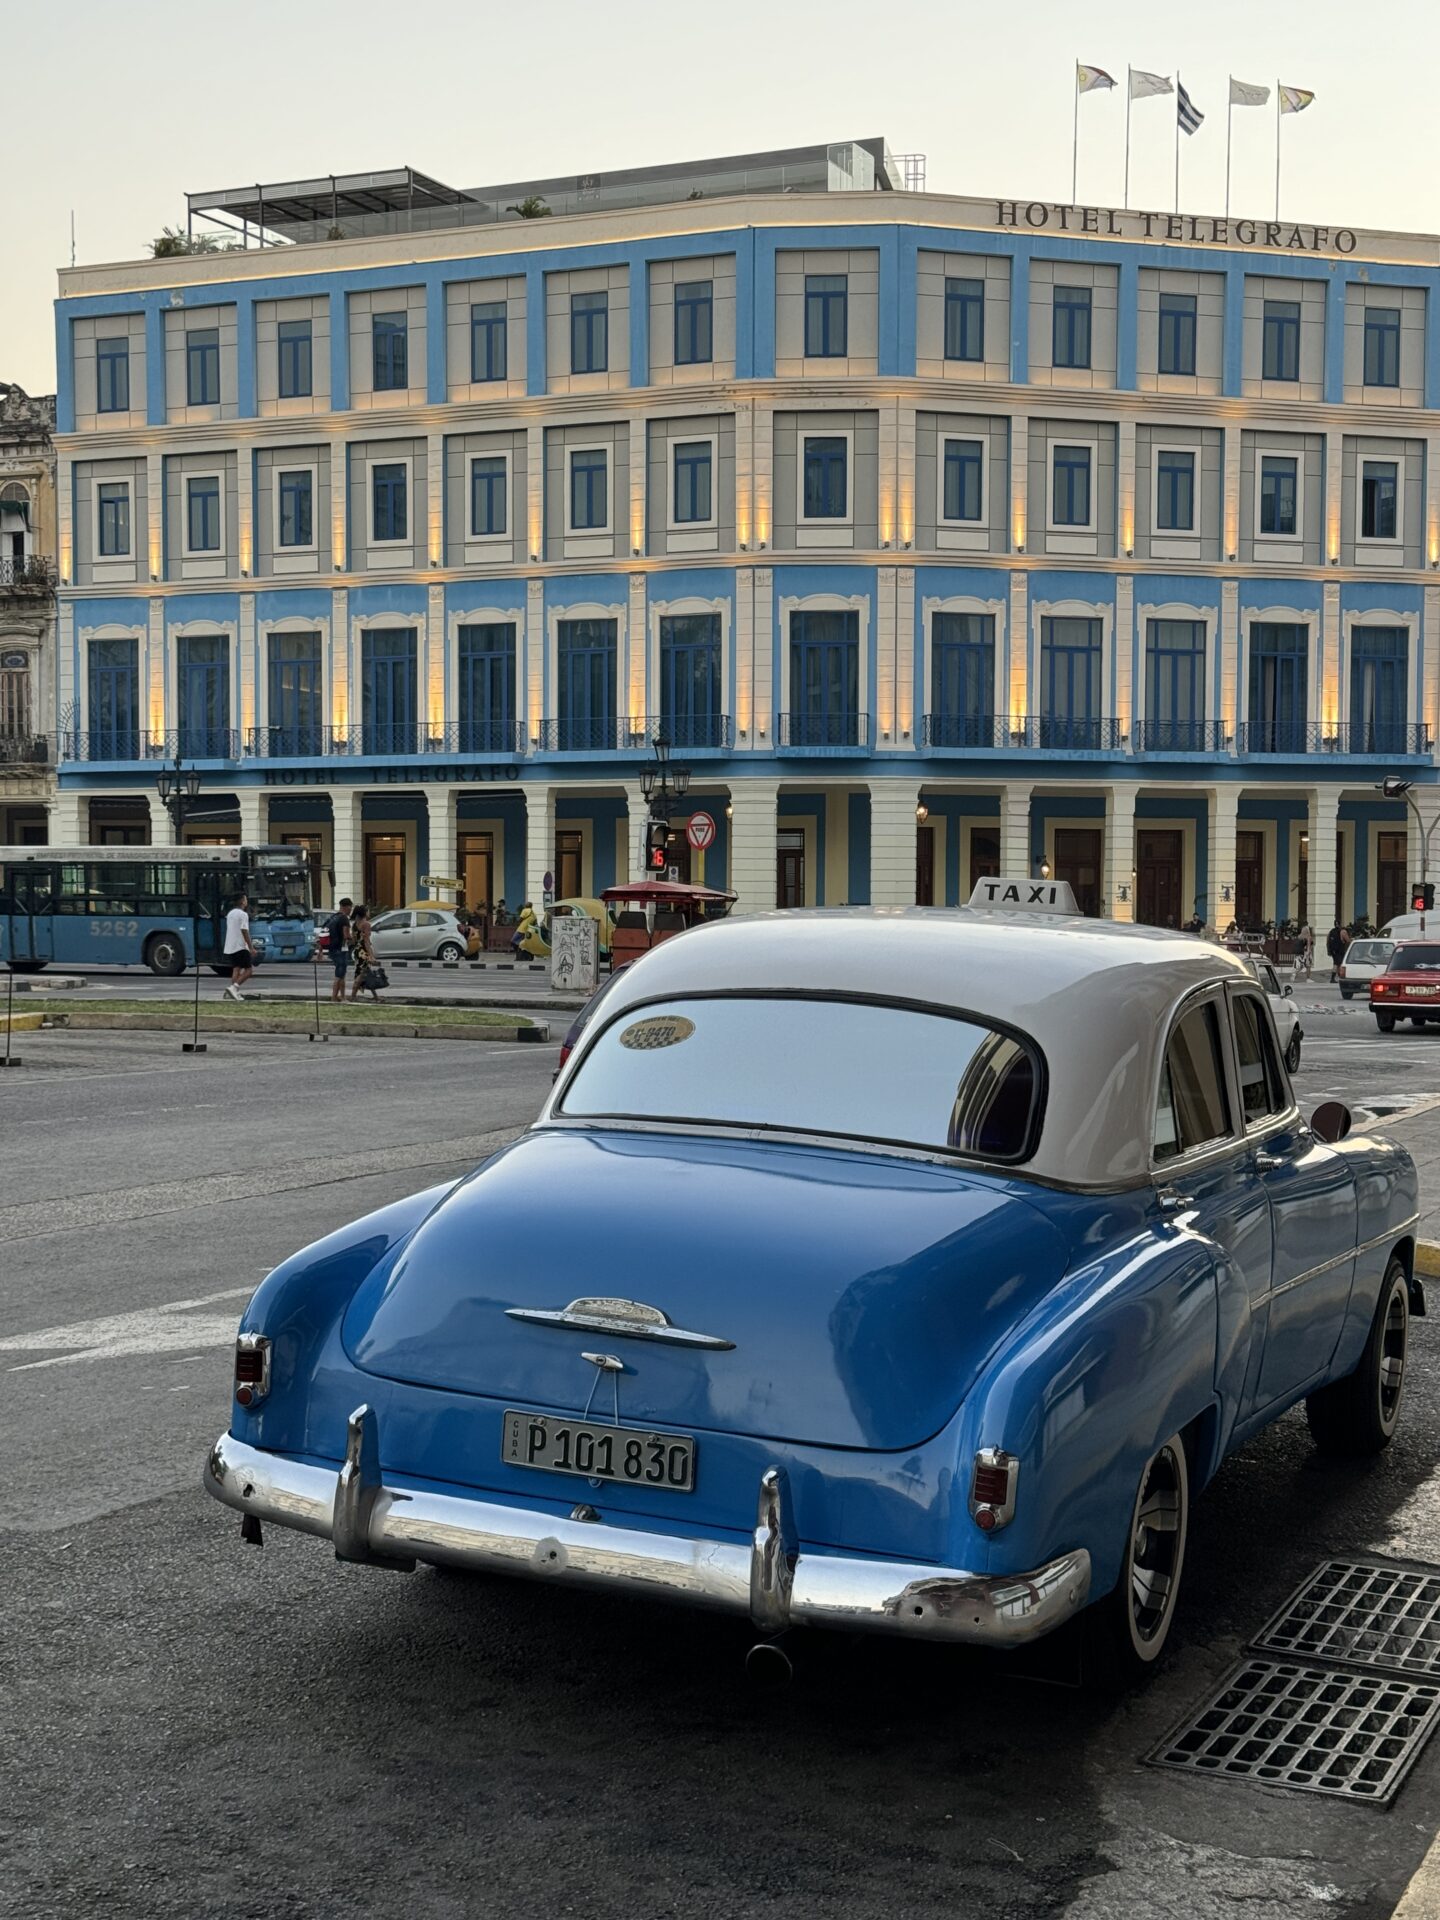 Beep-beep’m Beep-beep Yeah – The Cars of Old Havana